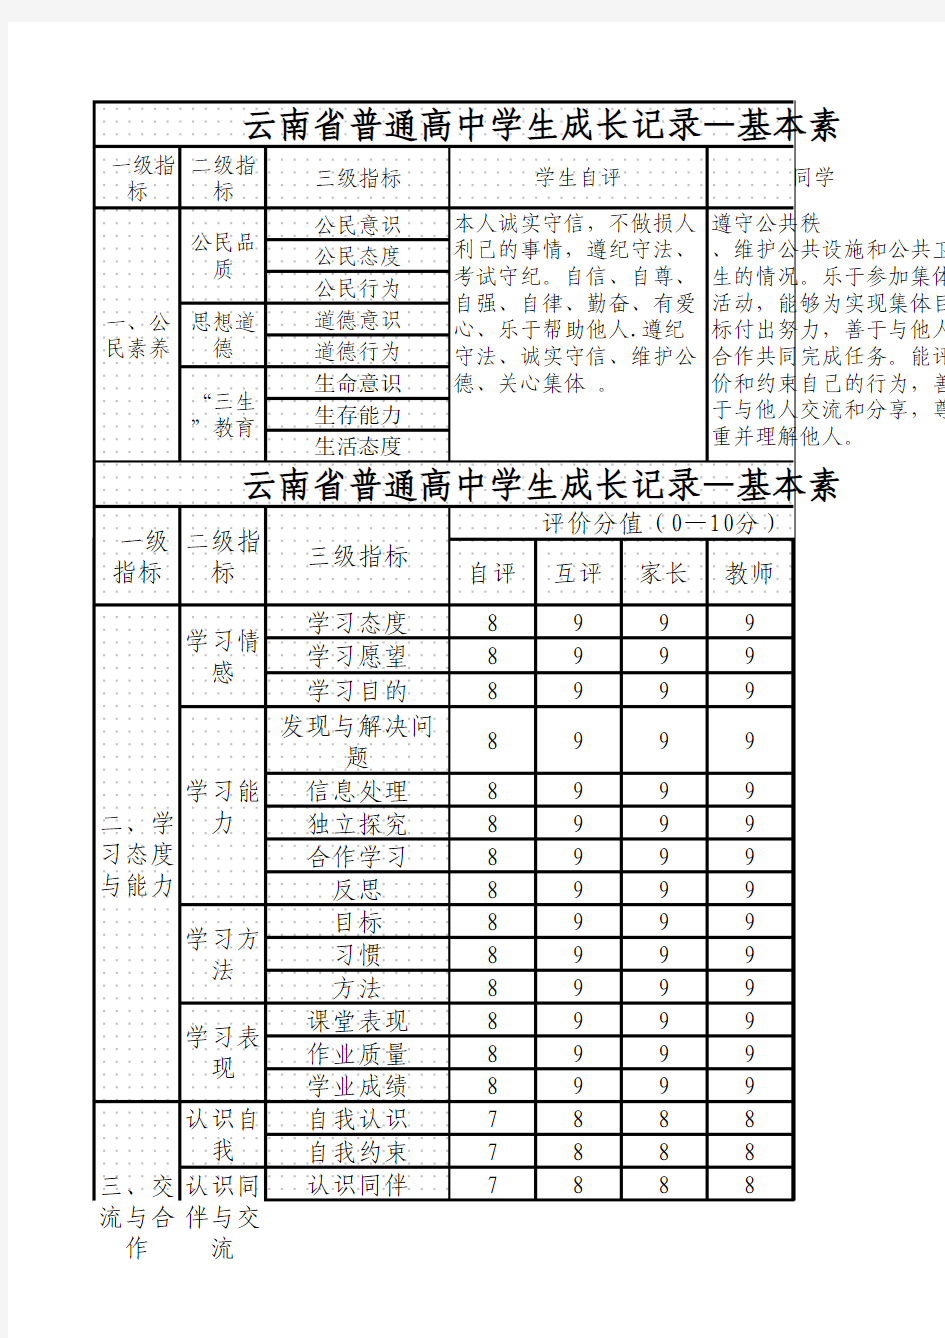 云南省普通高中学生成长记录手册示例1